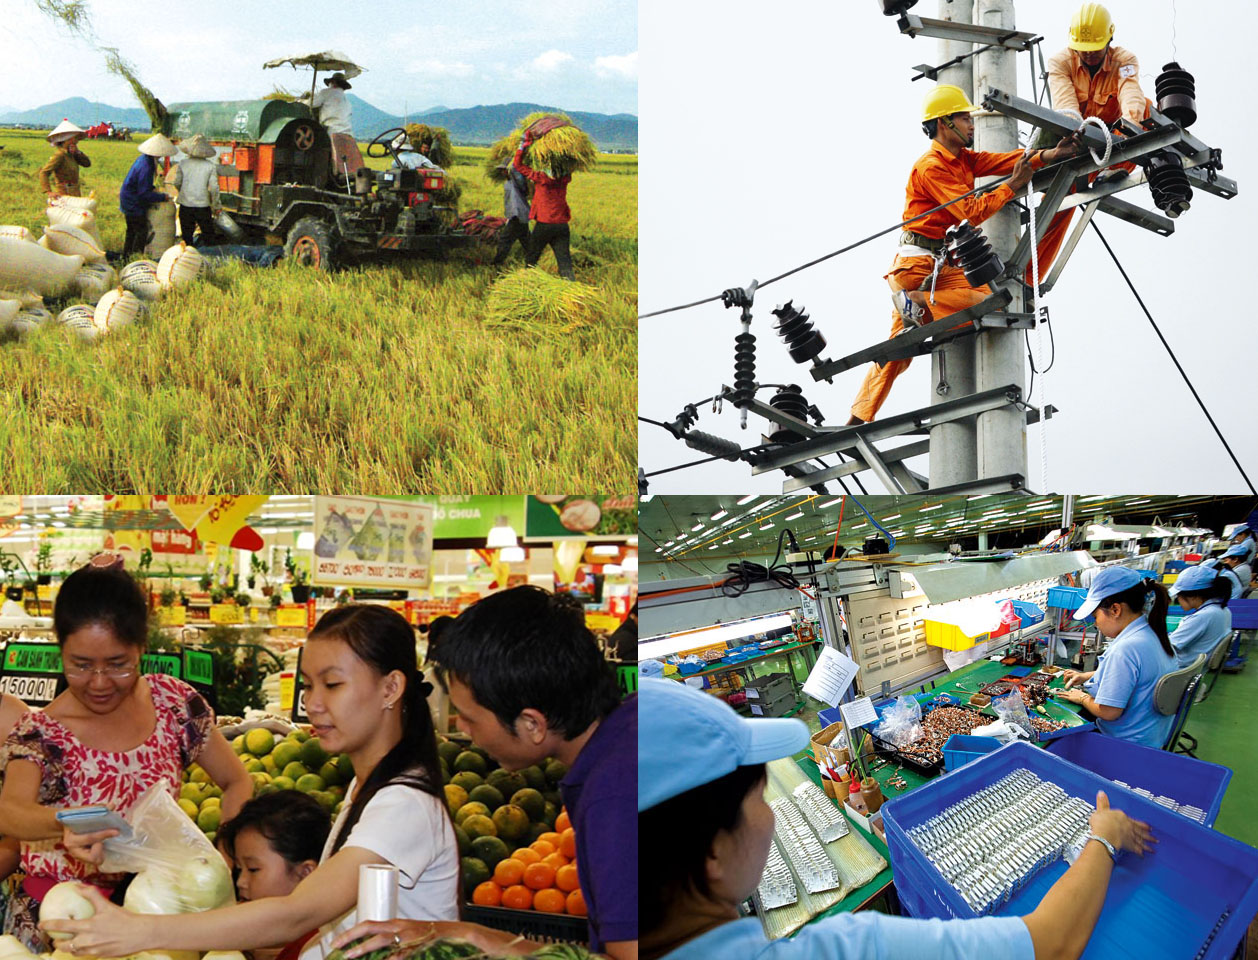 Rà soát lộ trình thực hiện các mục tiêu phát triển bền vững Việt Nam